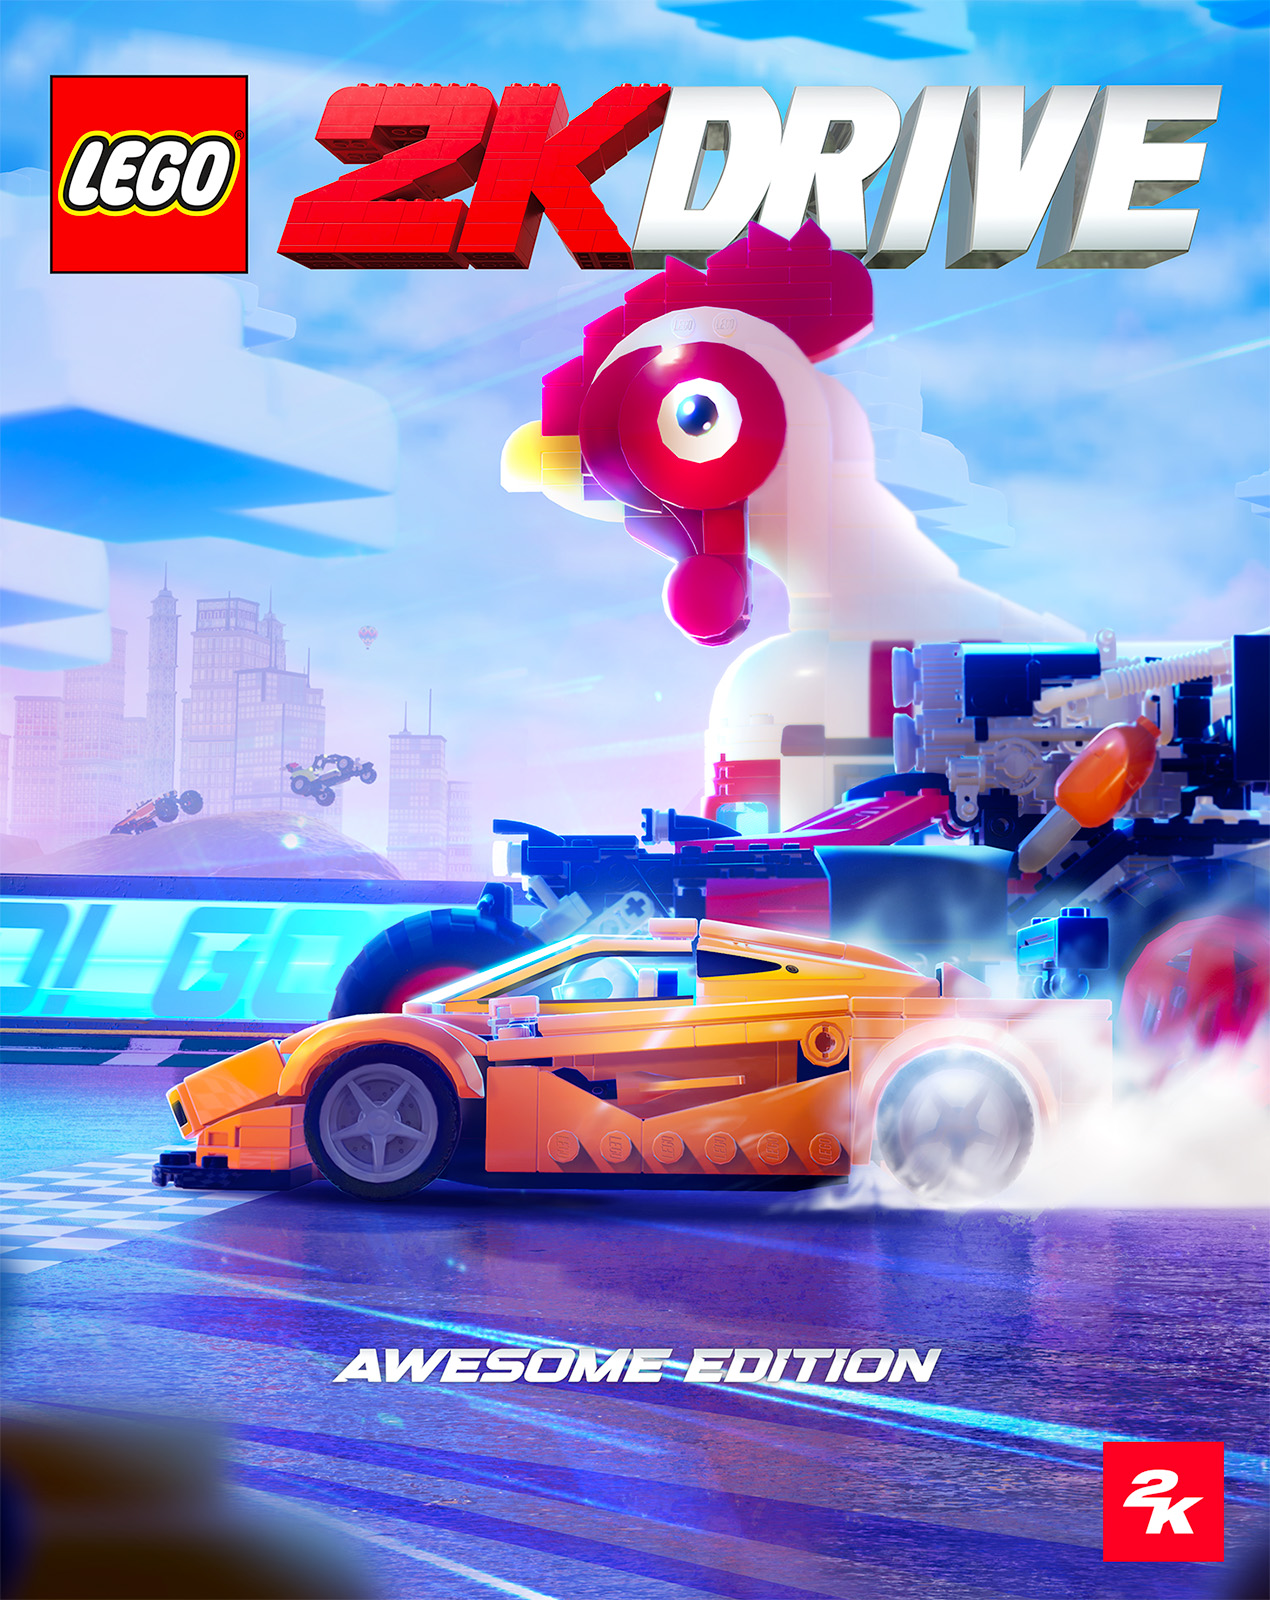 LEGO 2K Drive: il prossimo videogioco LEGO è annunciato per il 19 maggio 2023